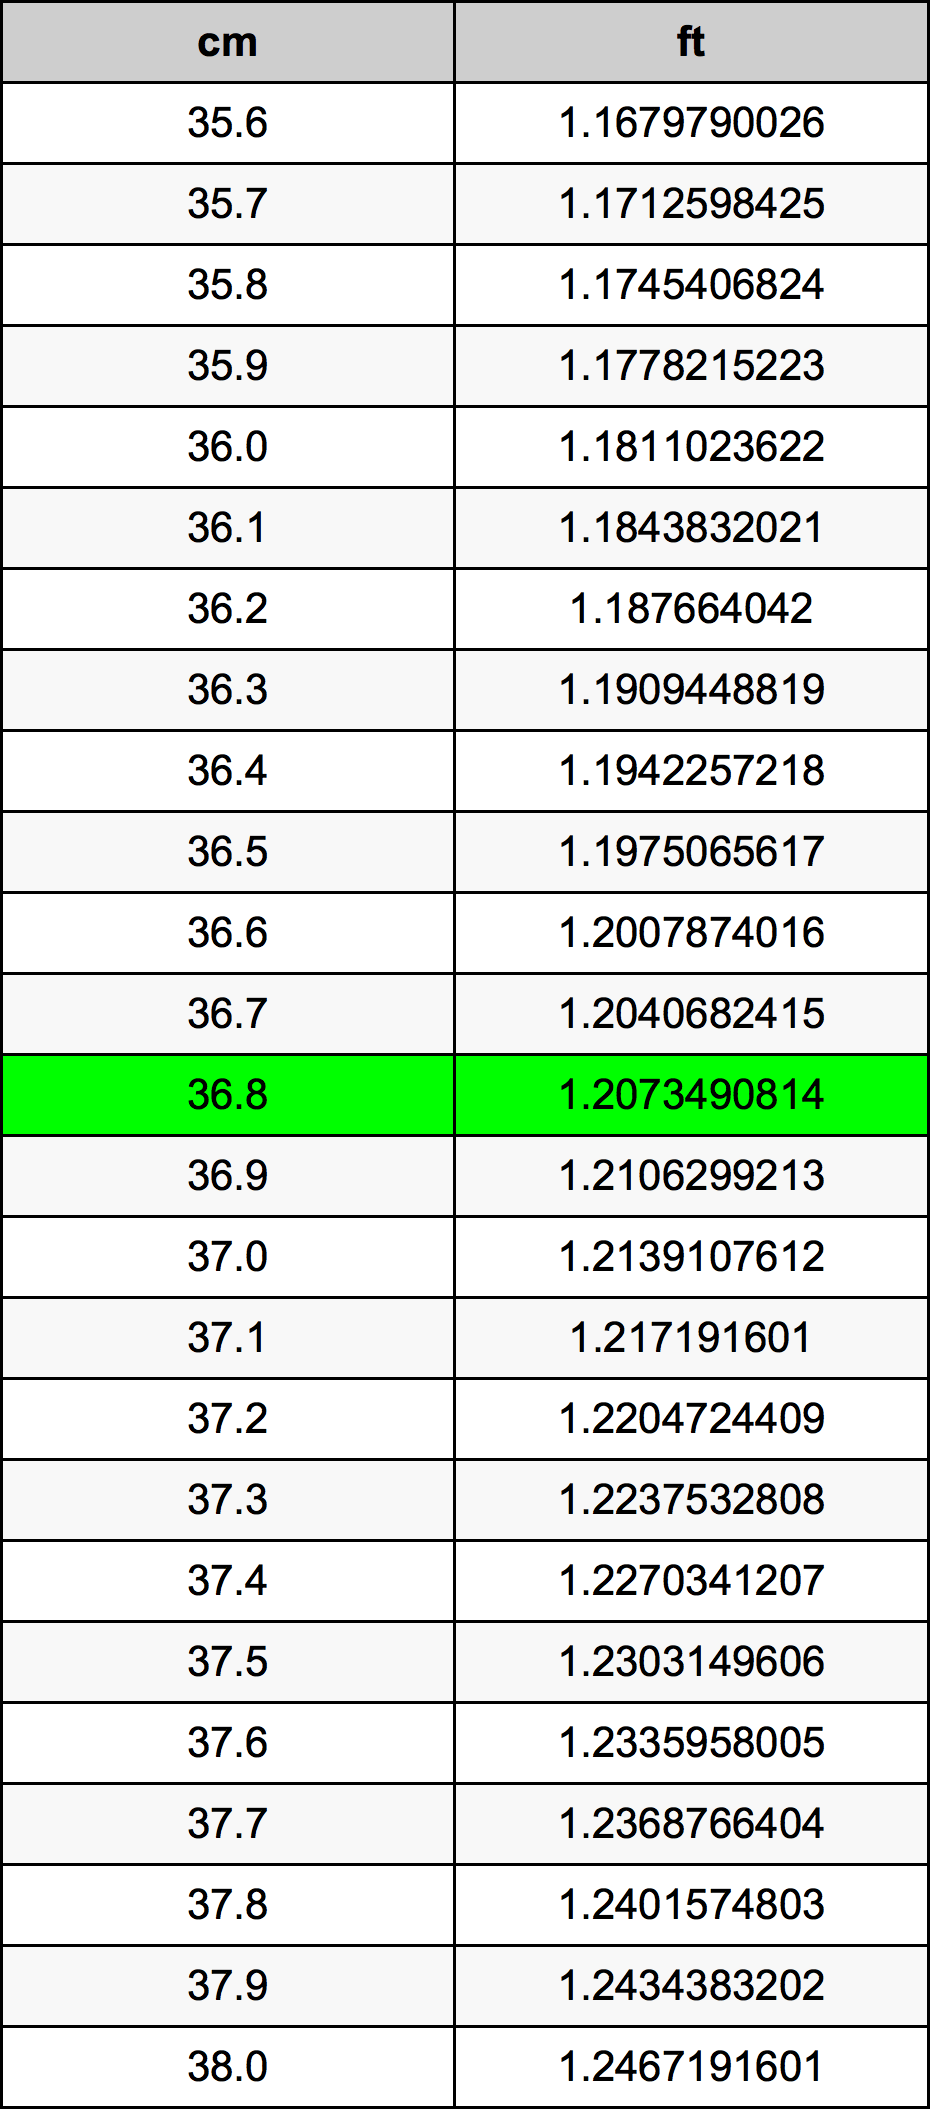 36.8 Centiméter átszámítási táblázat